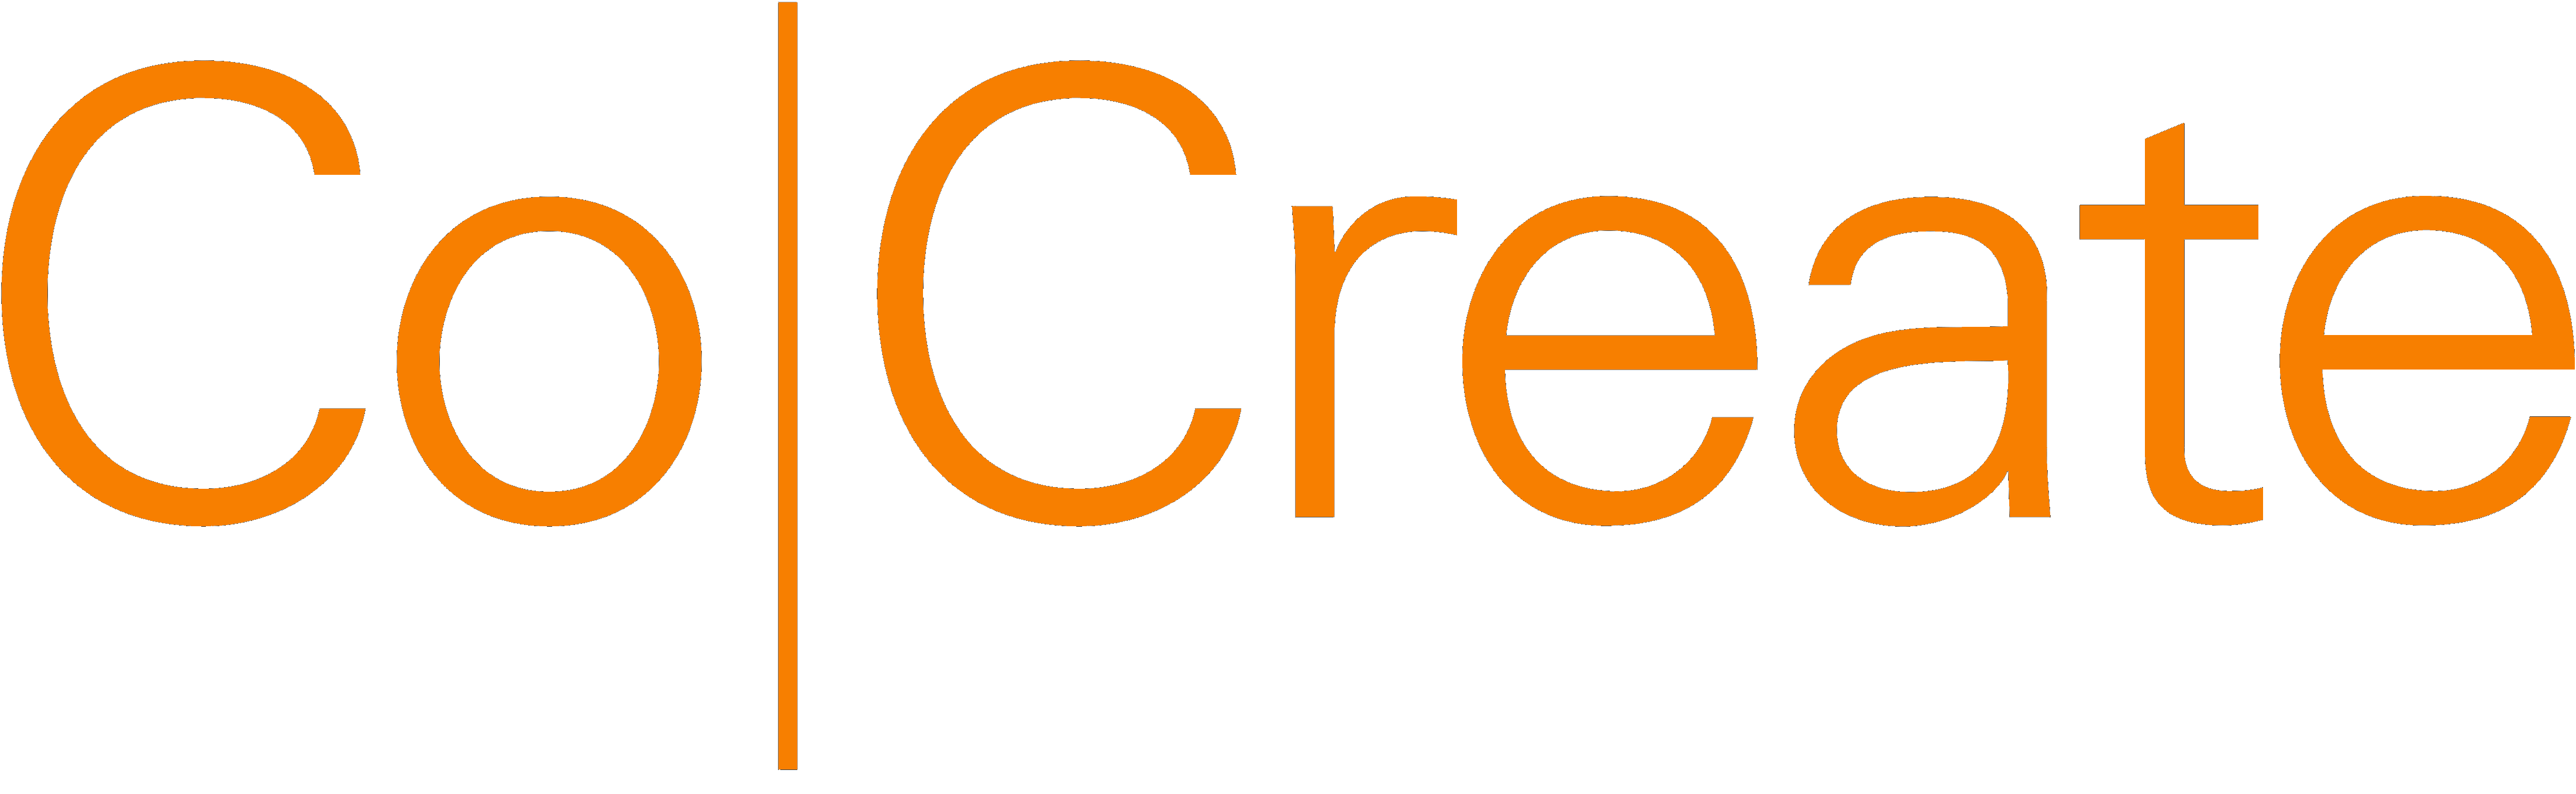 Co Create